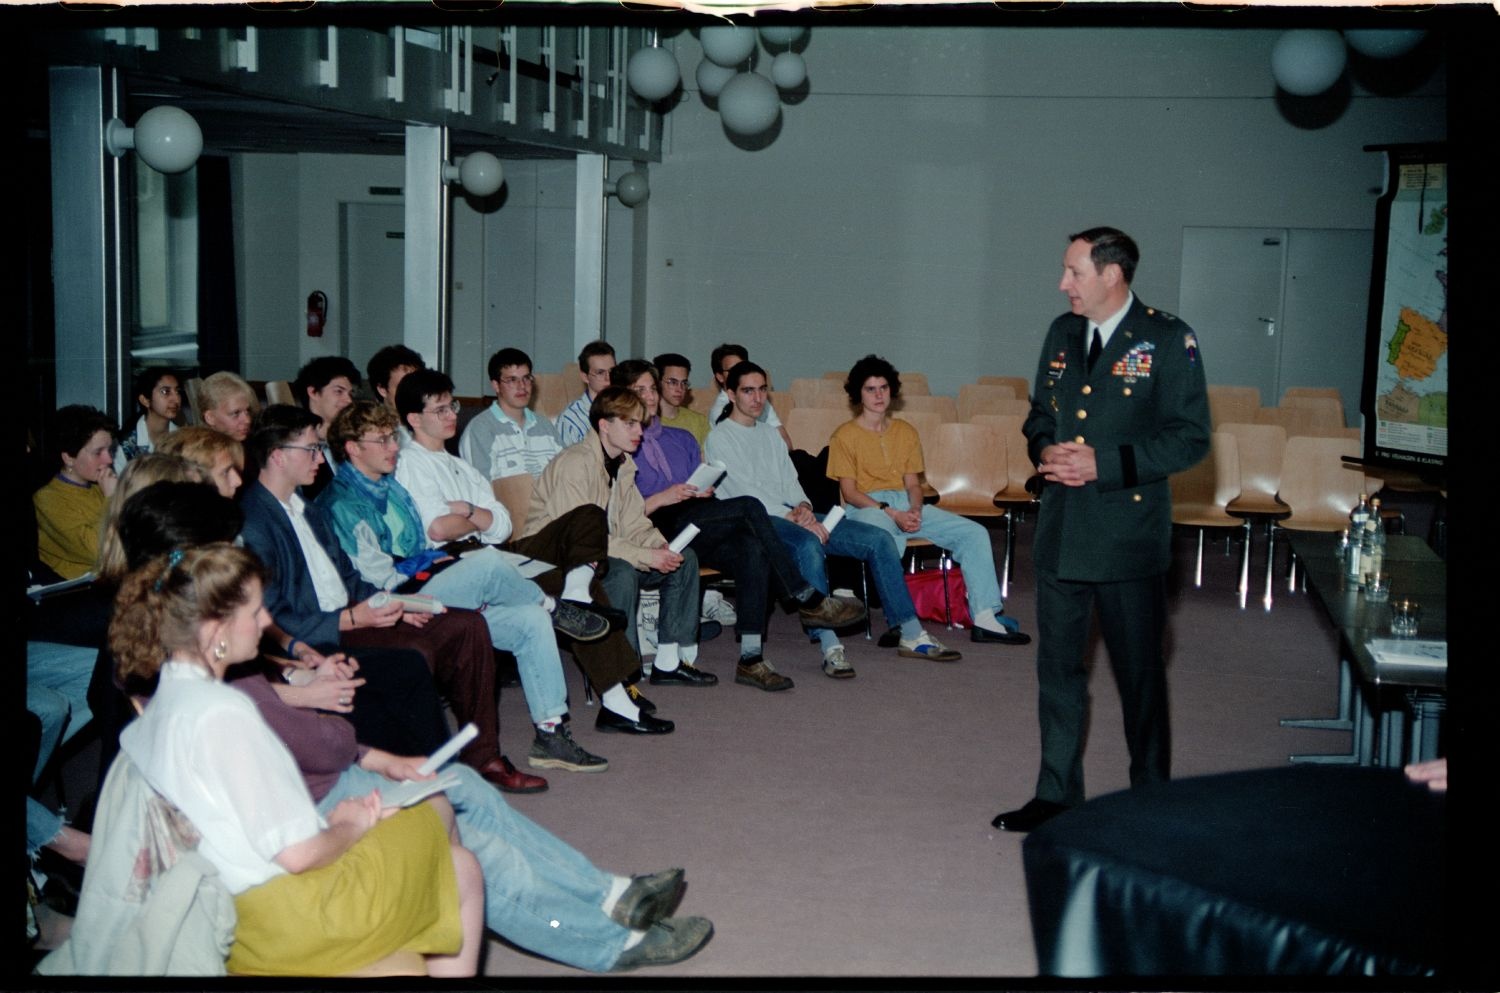 Fotografie: Besuch von US-Stadtkommandant Major General Raymond E. Haddock in einem Gymnasium in West-Berlin